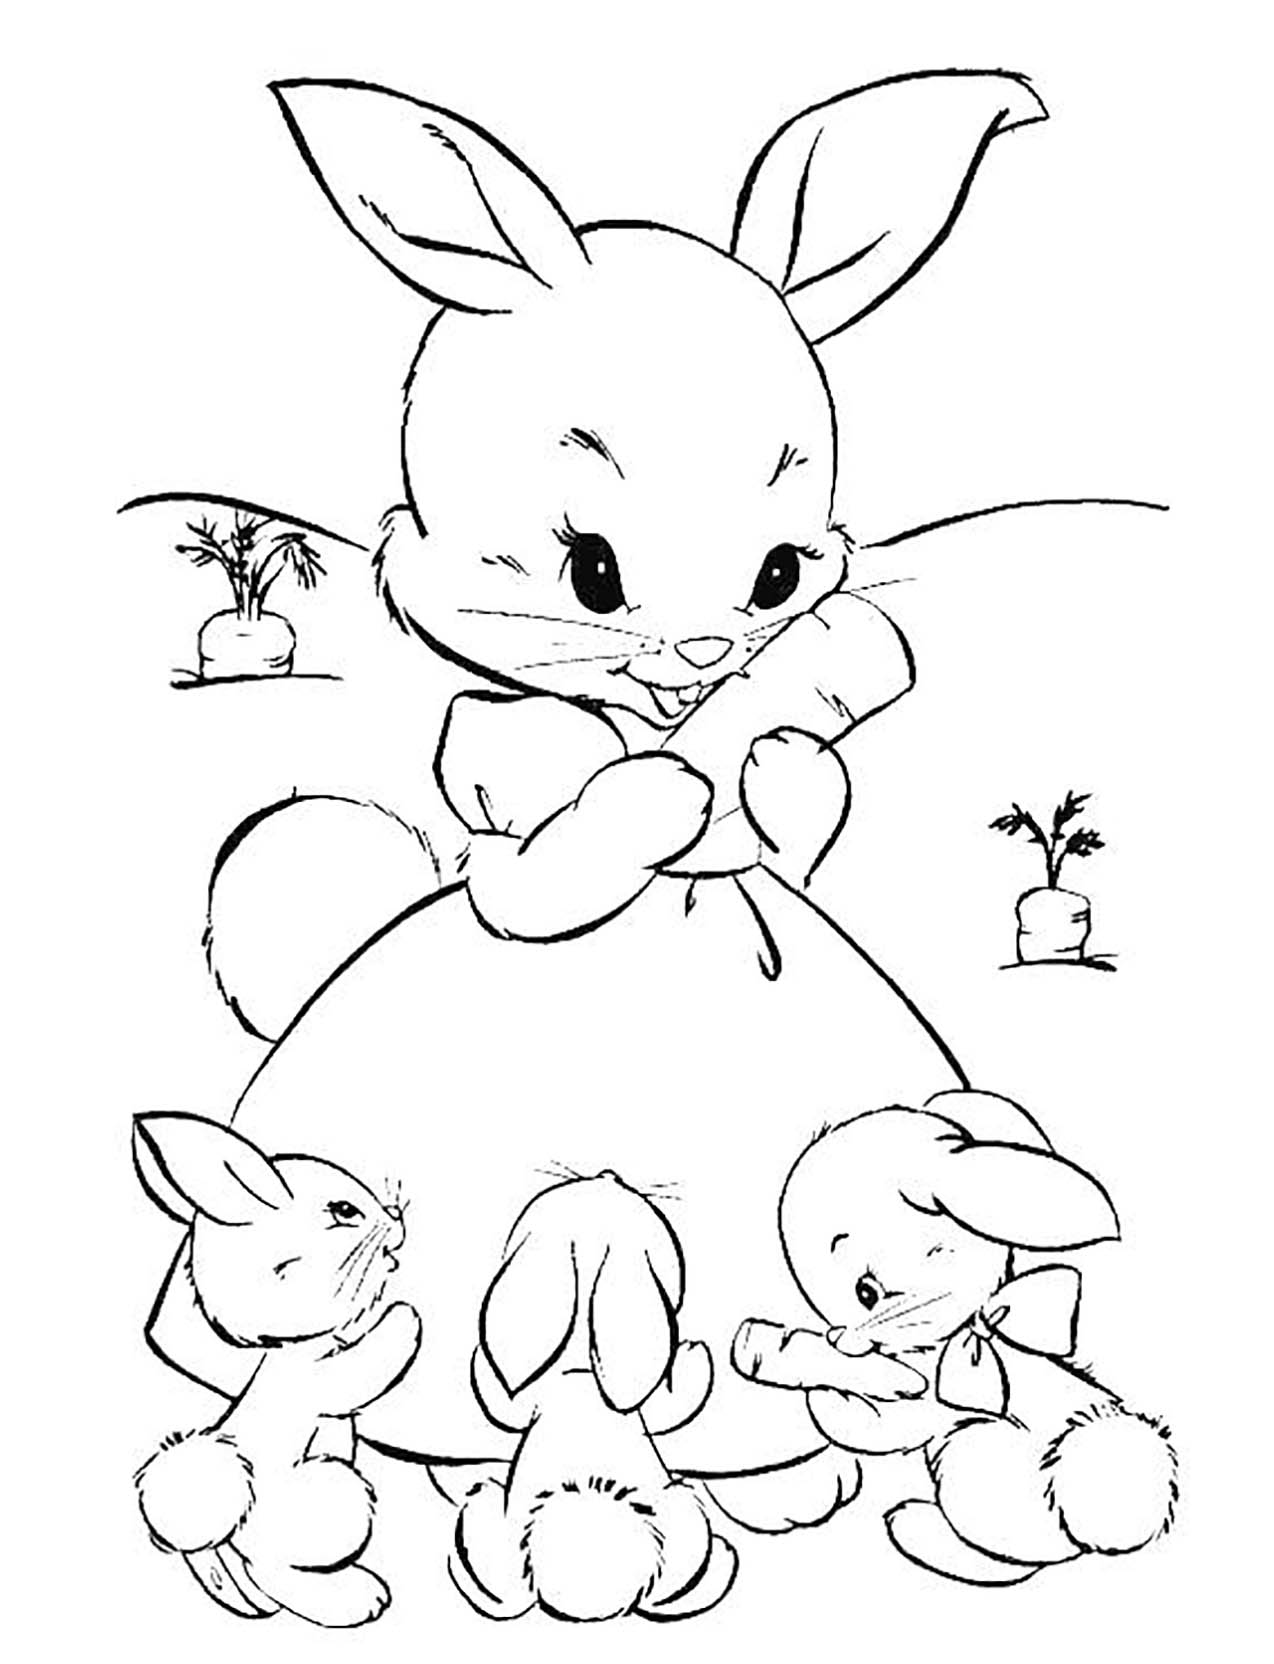 Coloriage de lapin à imprimer pour enfants